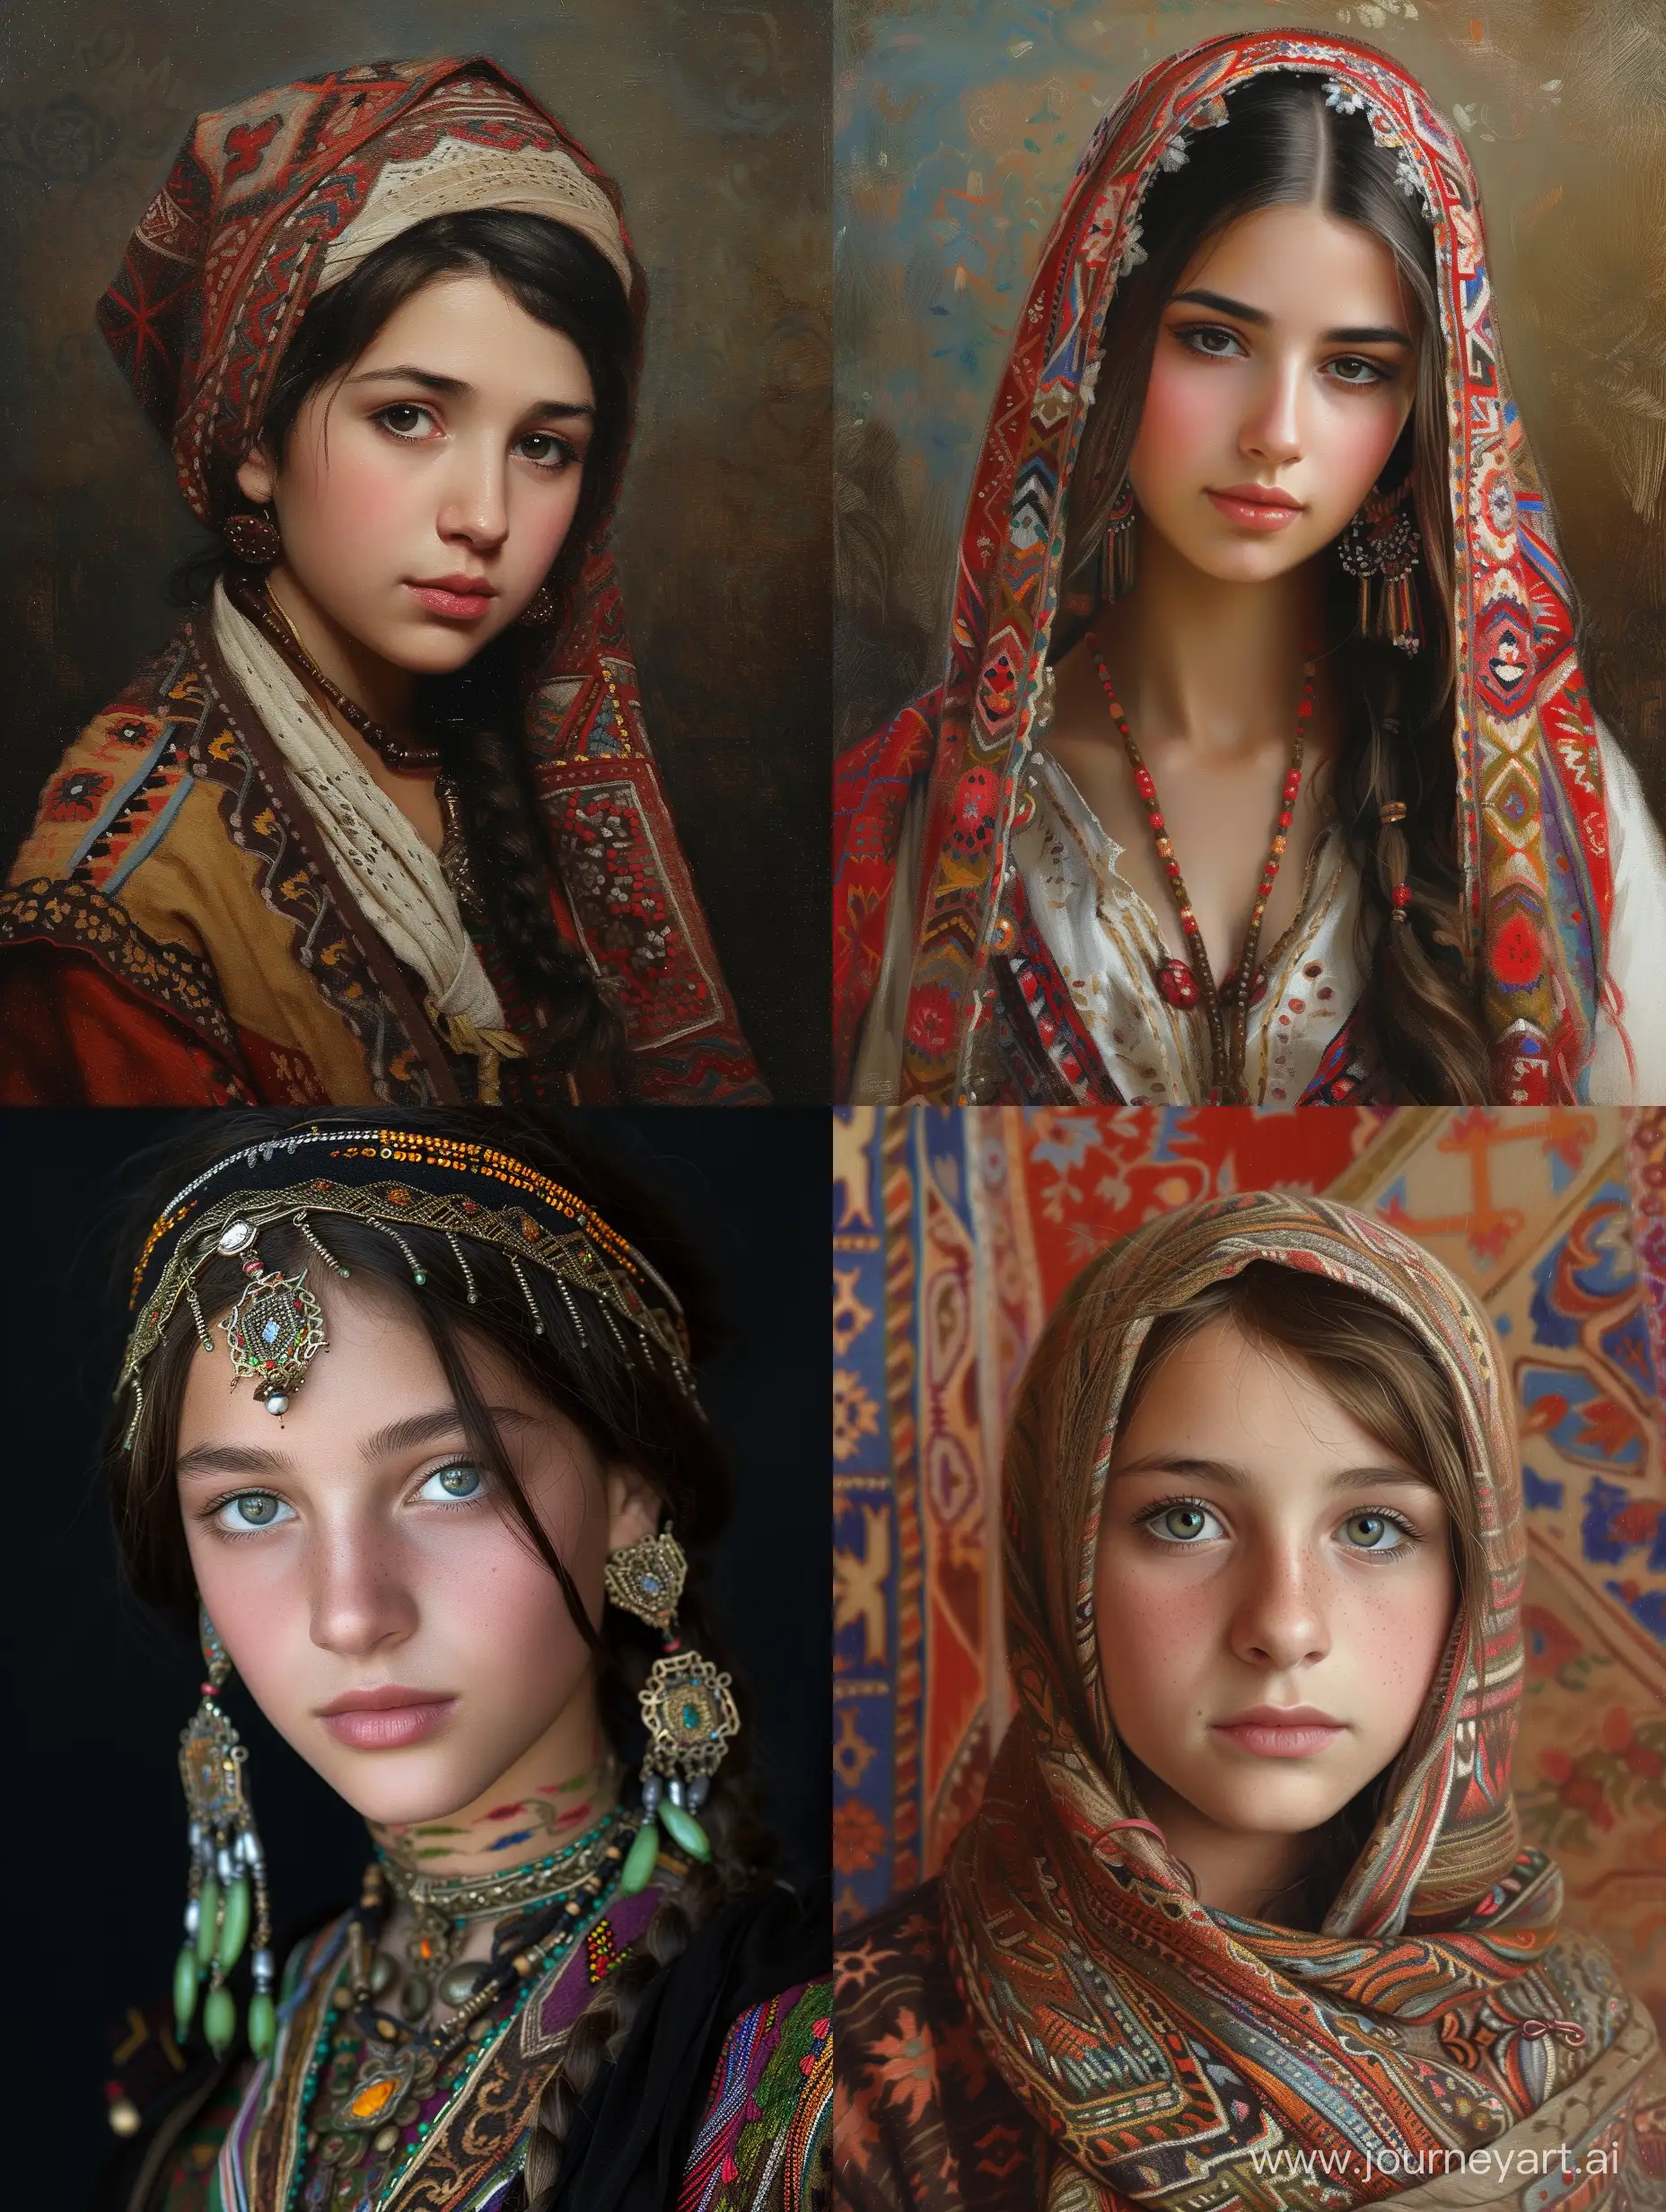 
Circassian girl
